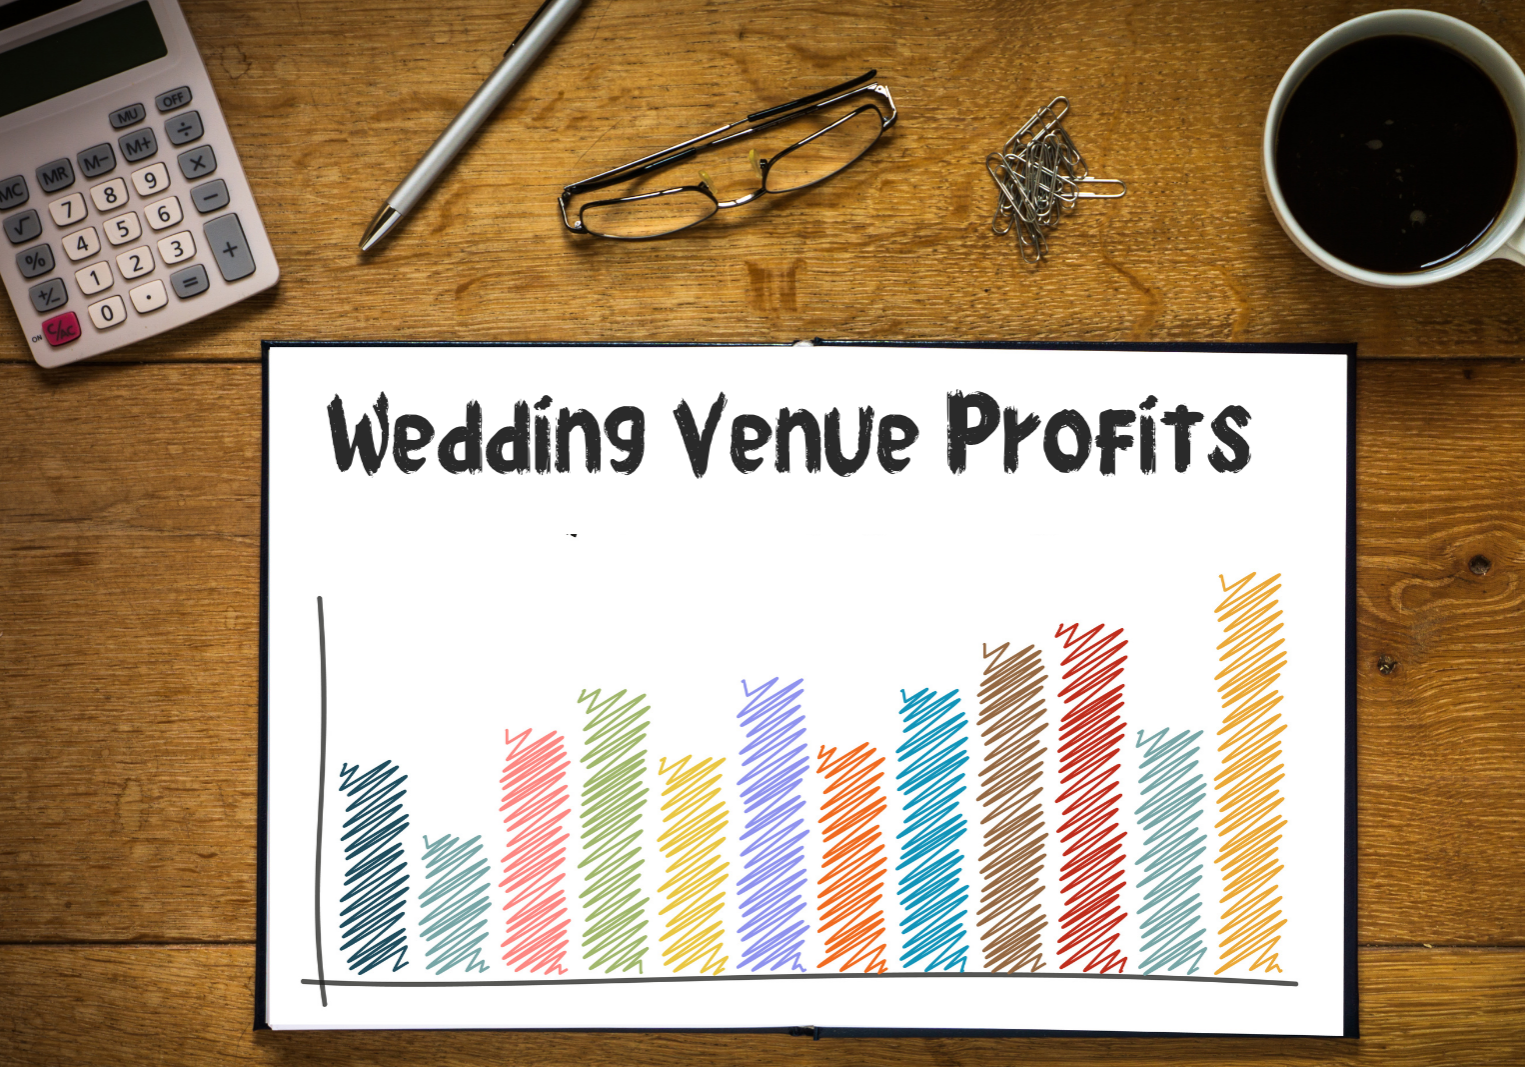 Wedding venue profit graph